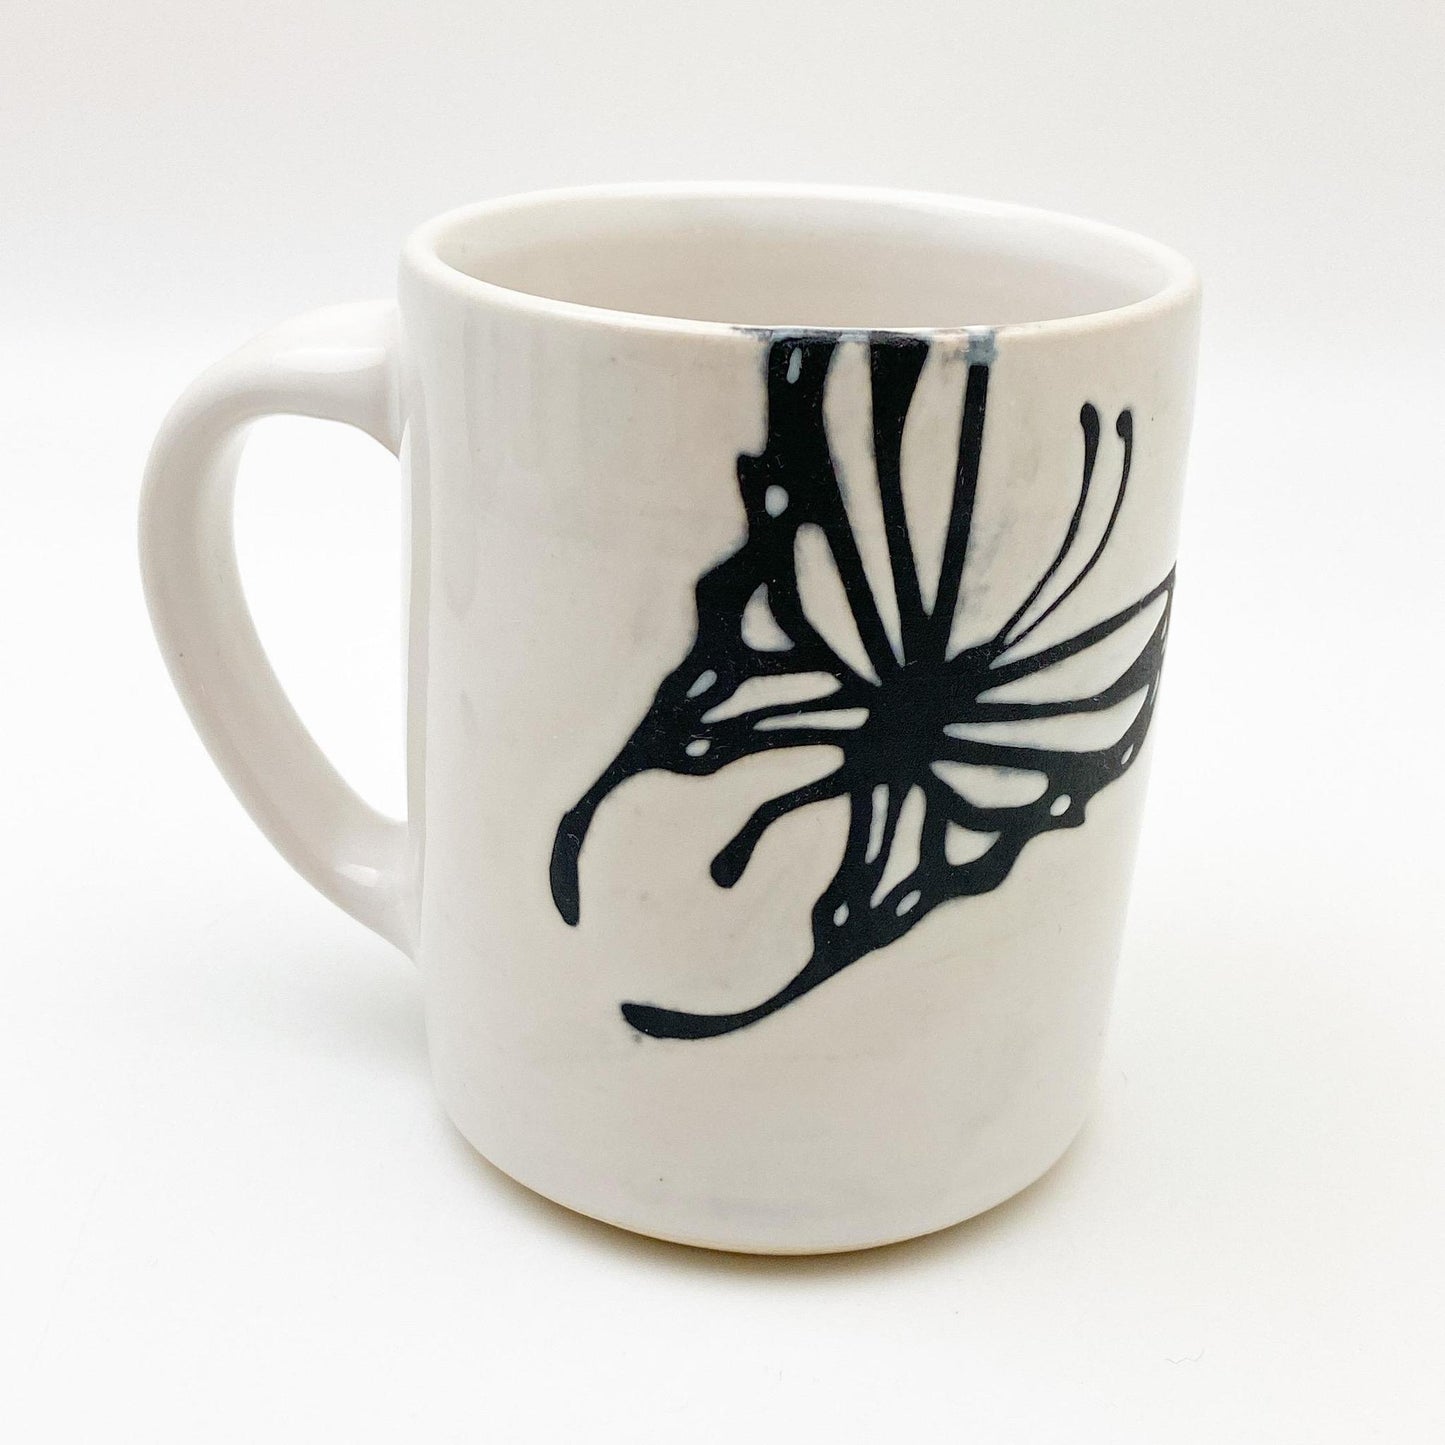 Mug - Black & White Ceramic - Butterfly